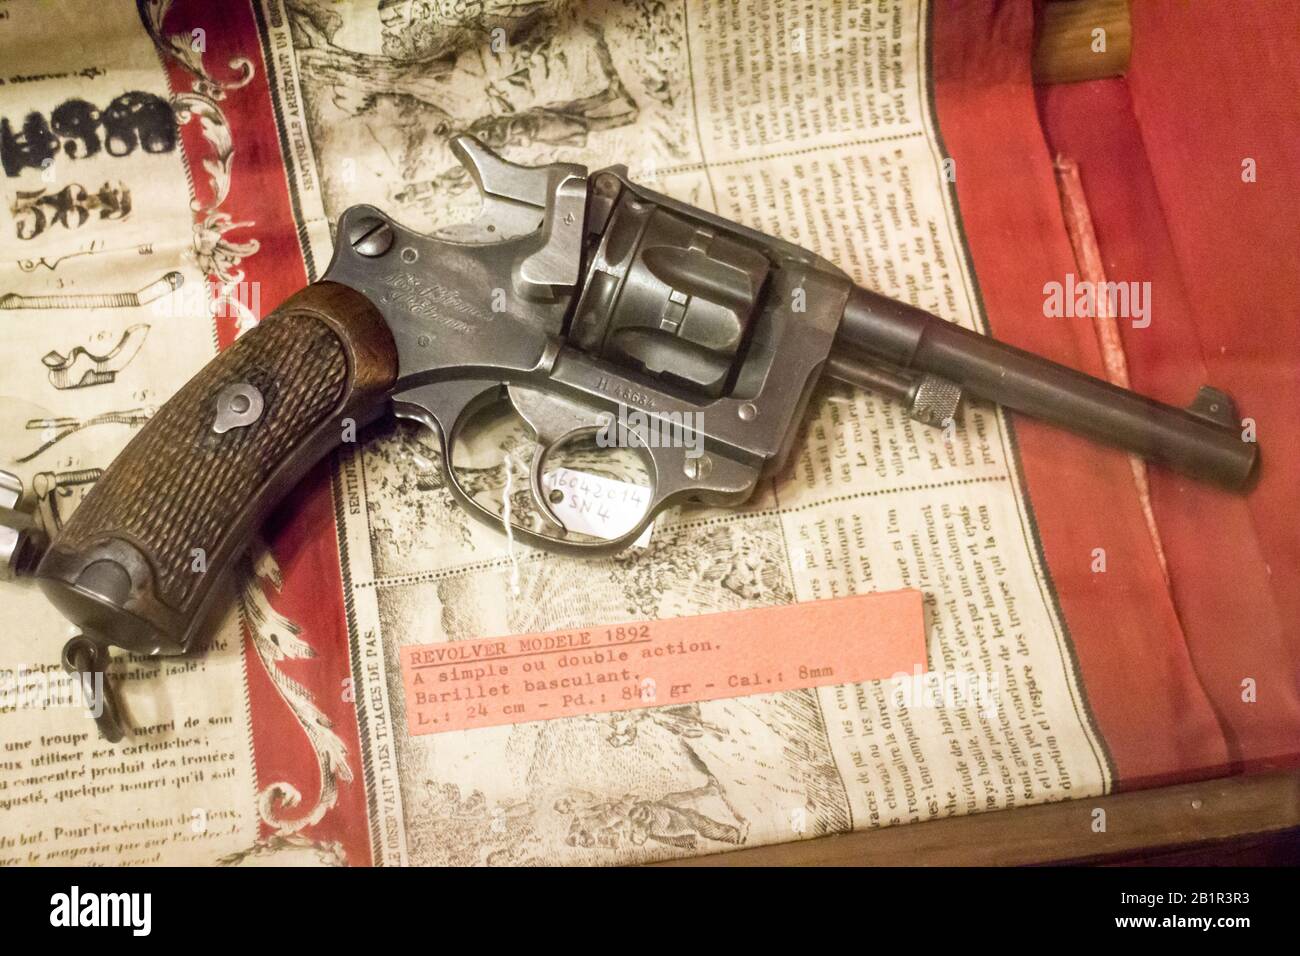 Musée de l'Emperi,Salon-de-Provence : Revolver modèle 1892,simple et double action,barillet basculant,calibre 8mm Stock Photo